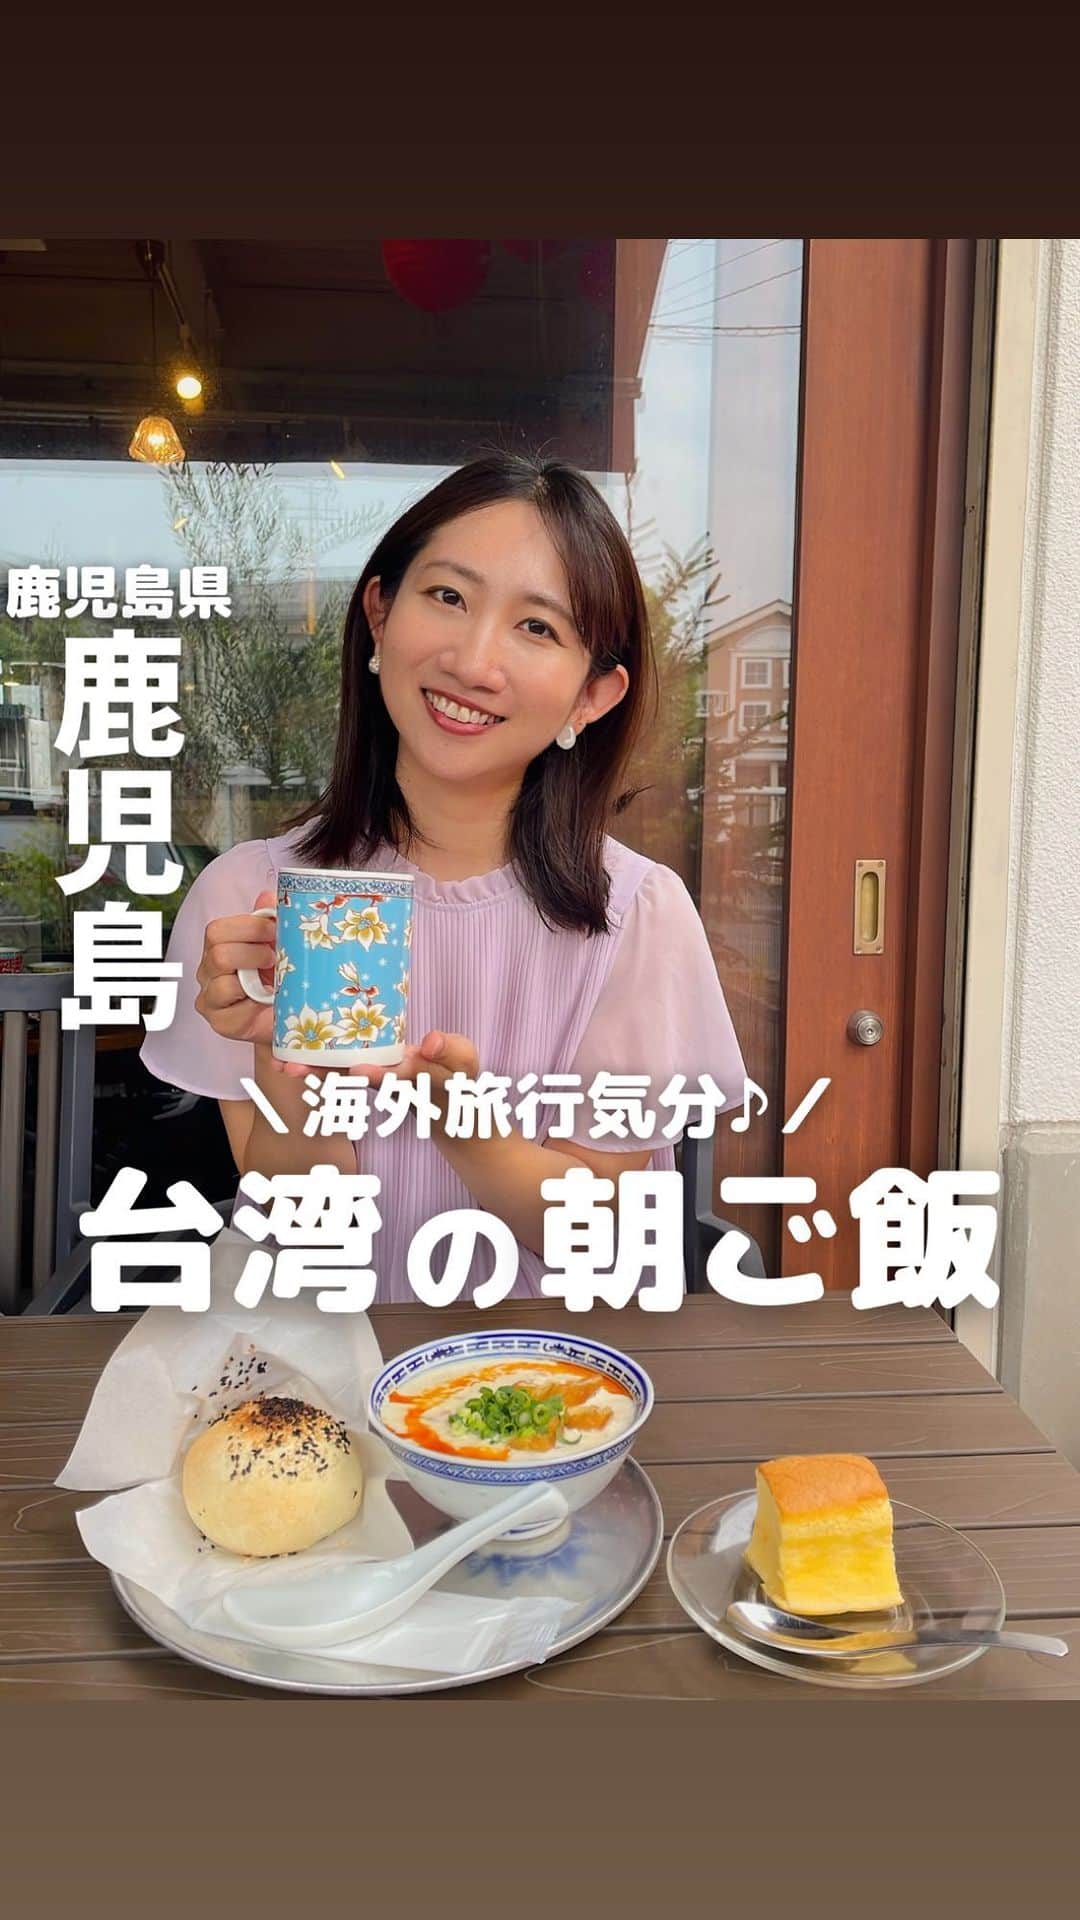 山下智子のインスタグラム：「@tomoko__yamashita ←鹿児島子連れスポットやランチ  ママのおひとり時間や女子会におすすめ✨ 台湾の朝食を味わえるお店をご紹介します🫶  朝食セットは2種類 ▽胡椒餅セット ▽チキンサラダサンドのセット  私は台湾の焼き肉まん #胡椒餅 を注文！ セットの豆乳スープは3種類 ▽豆乳(プレーン) ▽黒糖豆乳 ▽シェントウジャン  私はシェントウジャンを選びました♡ おぼろ豆腐のようにトロットロでとーってもおいしかったです🥺  茶葉で入れる烏龍茶やジャスミン茶や、 台湾カステラなどスイーツもつけることができます✨  ちなみにテイクアウトもあるので、 中々外出しづらいという方も本場の台湾グルメを味わうことができます🥳  .......................................... ◆𝐋𝐨𝐜𝐚𝐭𝐢𝐨𝐧◆ 香蔵小吃 @kozo.xiao.chi  📍鹿児島県鹿児島市和田2-22-11 open 09:30-16:00 🚘駐車場有 ..........................................  #tomoko__yamashita_kagoshima 「鹿児島」に関する投稿は、 このハッシュタグで検索！  ..........................................  ◆𝑻𝒉𝒂𝒏𝒌𝒔◆ 最後まで読んでくれてありがとうございます❤️  このアカウントは、 鹿児島の子連れスポット・ランチを 発信しています♪  ／ フォロー・いいね・ コメント・保存大歓迎♪ 喜びます🙋‍♀️ ＼  @tomoko__yamashita  ..........................................   #鹿児島 #kagoshima #鹿児島モーニング #鹿児島朝ご飯 #鹿児島グルメ #鹿児島グルメ巡り #朝活 #台湾グルメ #香蔵小吃 #谷山グルメ #胡椒餅 #鹿児島ママ #鹿児島ママと繋がりたい」